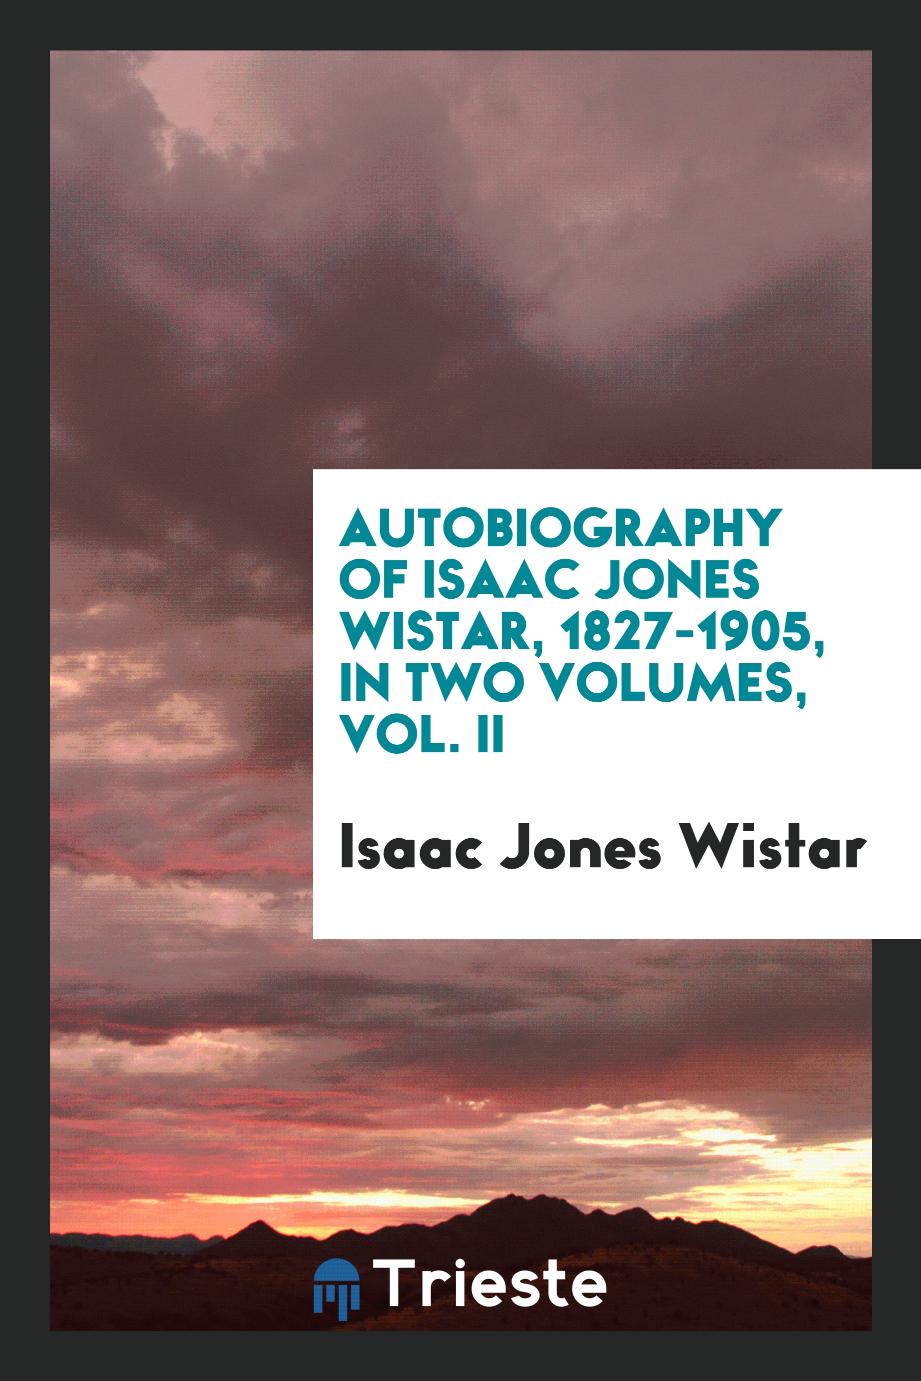 Autobiography of Isaac Jones Wistar, 1827-1905, in two volumes, Vol. II